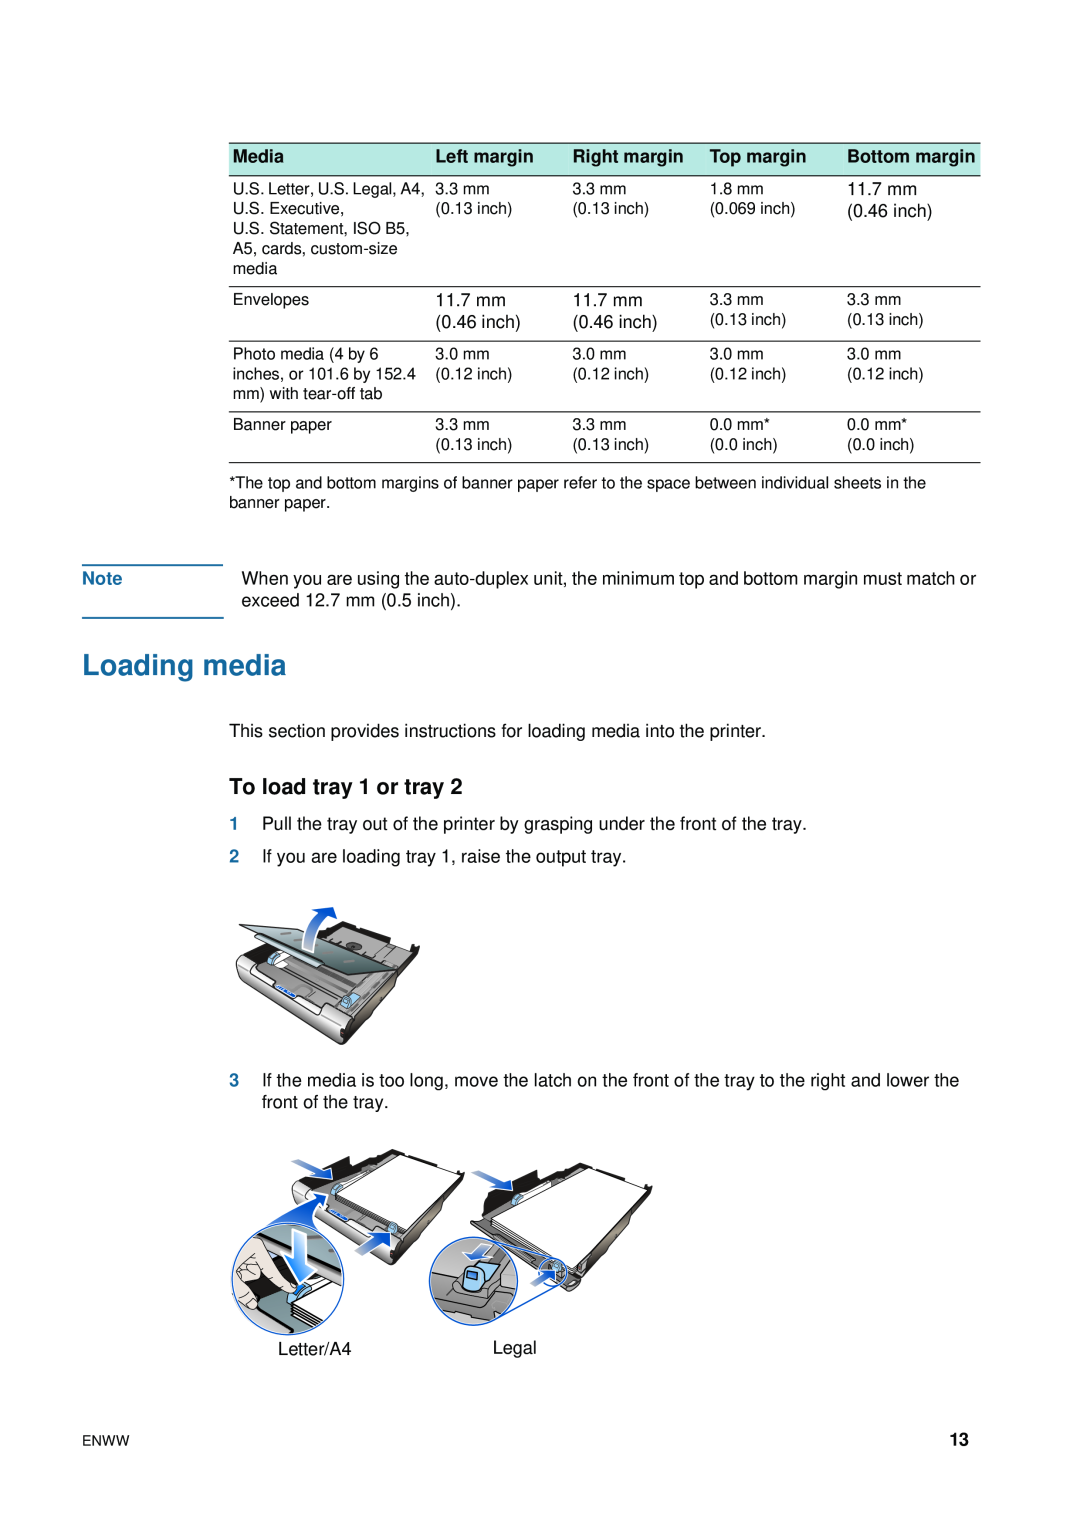 HP 1200 manual Loading media, To load tray 1 or tray, Media, Left margin, Right margin, Top margin, Bottom margin 